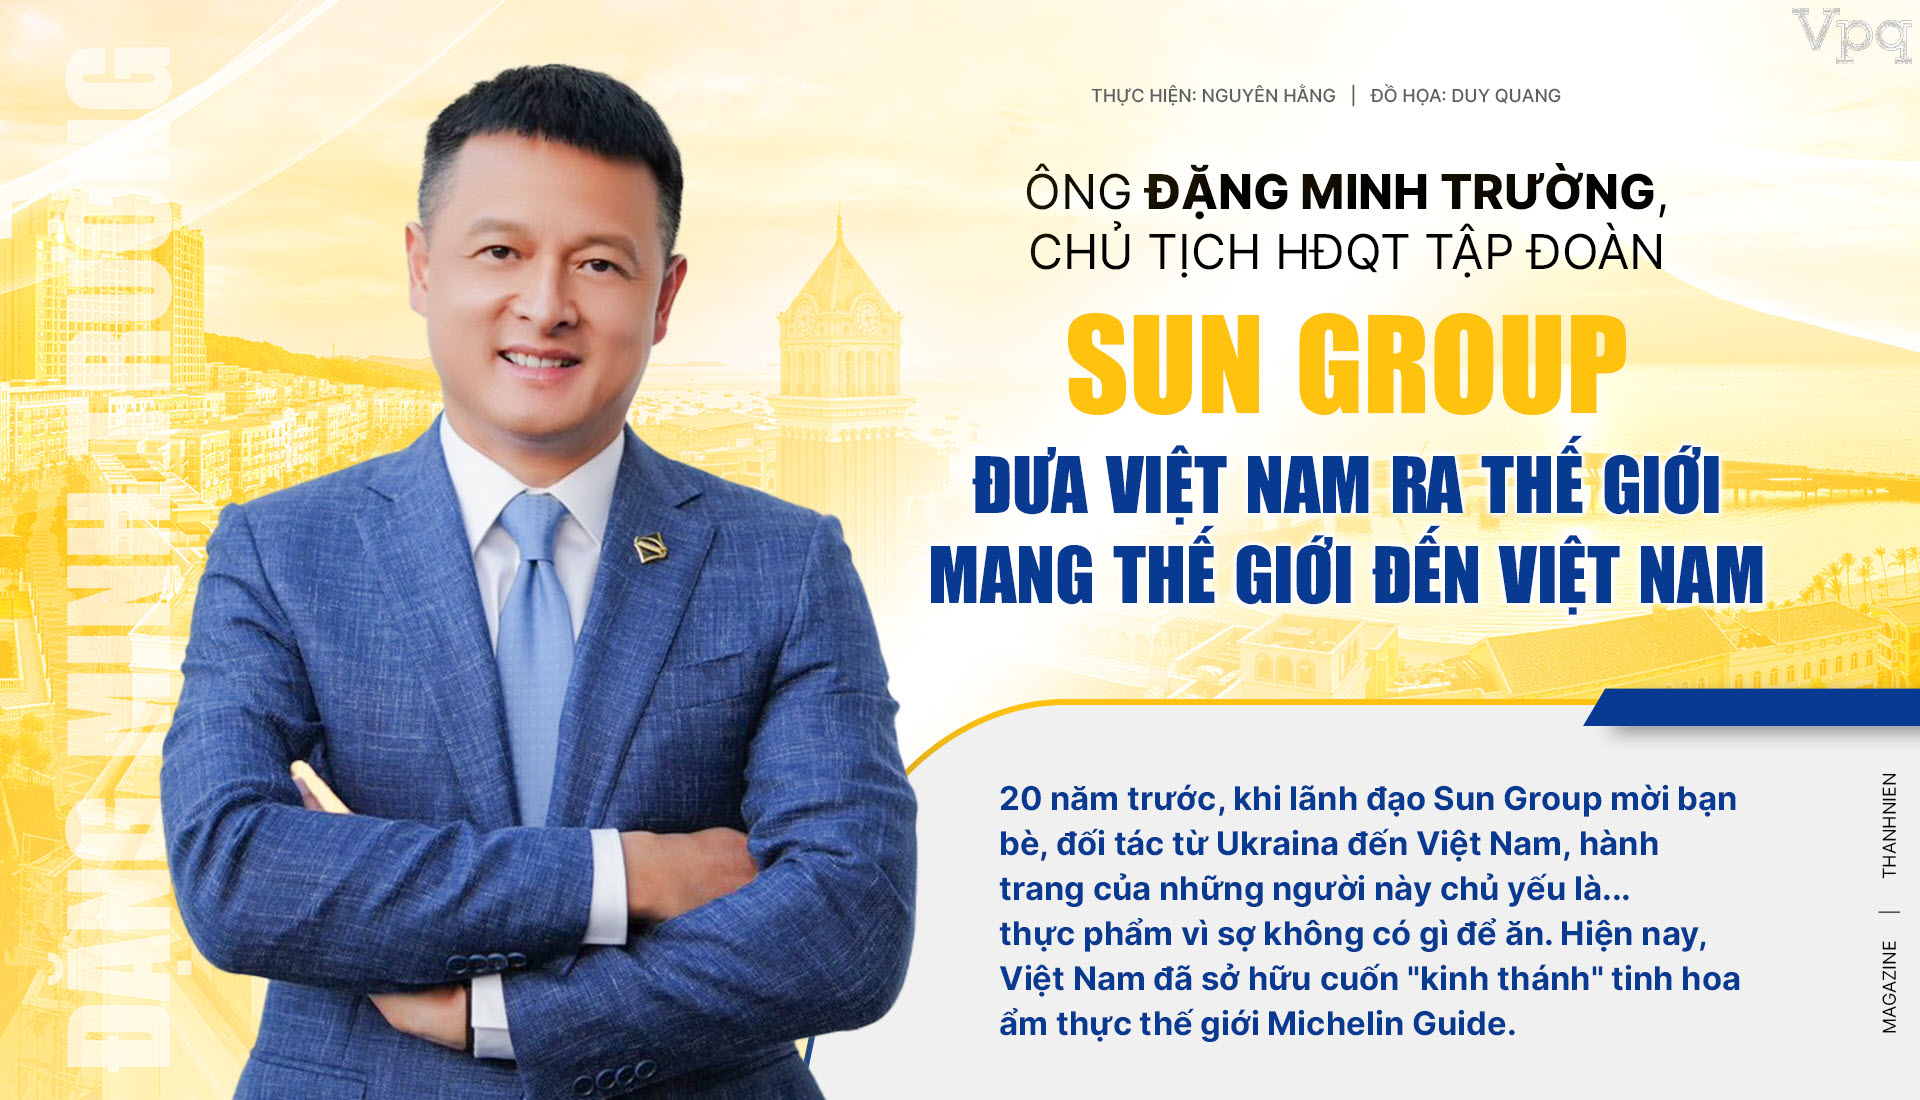 Ông Đặng Minh Trường, Chủ tịch HĐQT Tập đoàn Sun Group: Đưa Việt Nam ra thế giới - mang thế giới đến Việt Nam